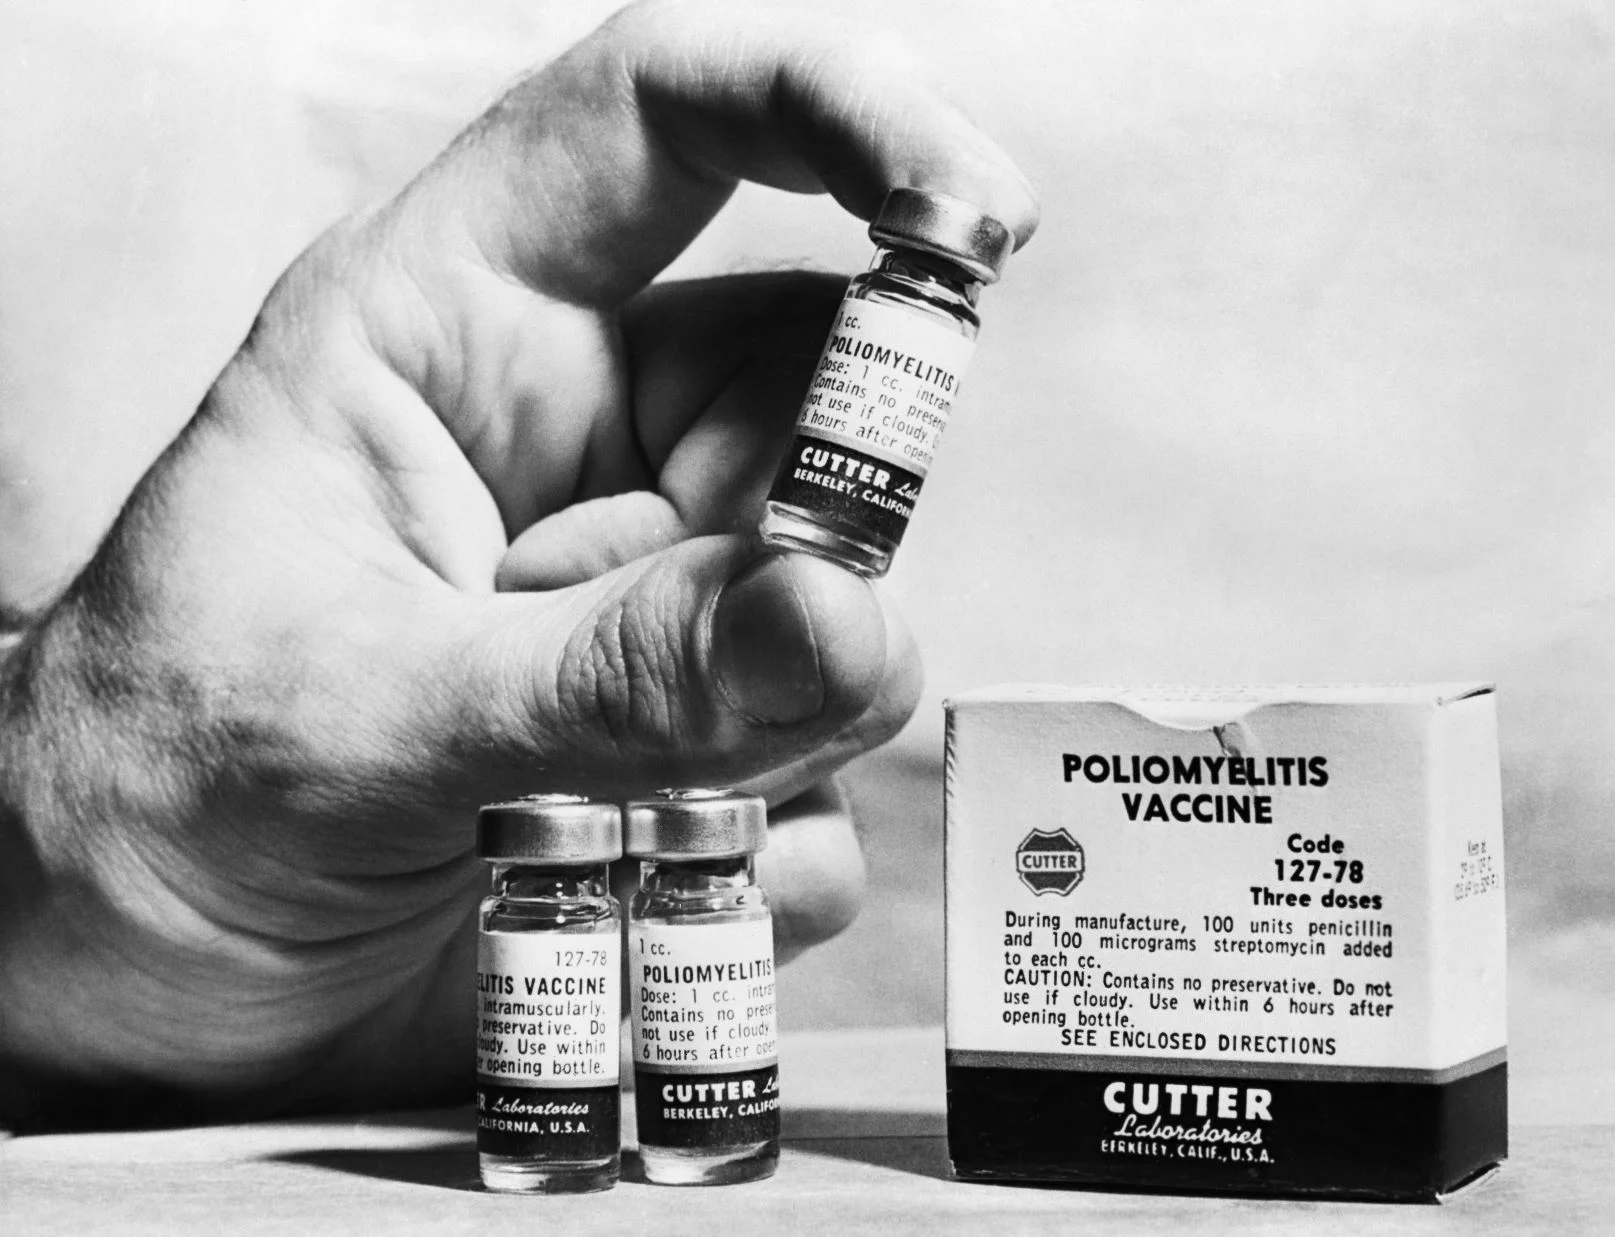 一九二八年蘇格蘭人弗萊明發現了盤尼西林的殺菌功效，當時鮮為世人所知，但在十多年後的二戰大派用場；這可能是歷史上拯救了最多人性命的偉大發明。